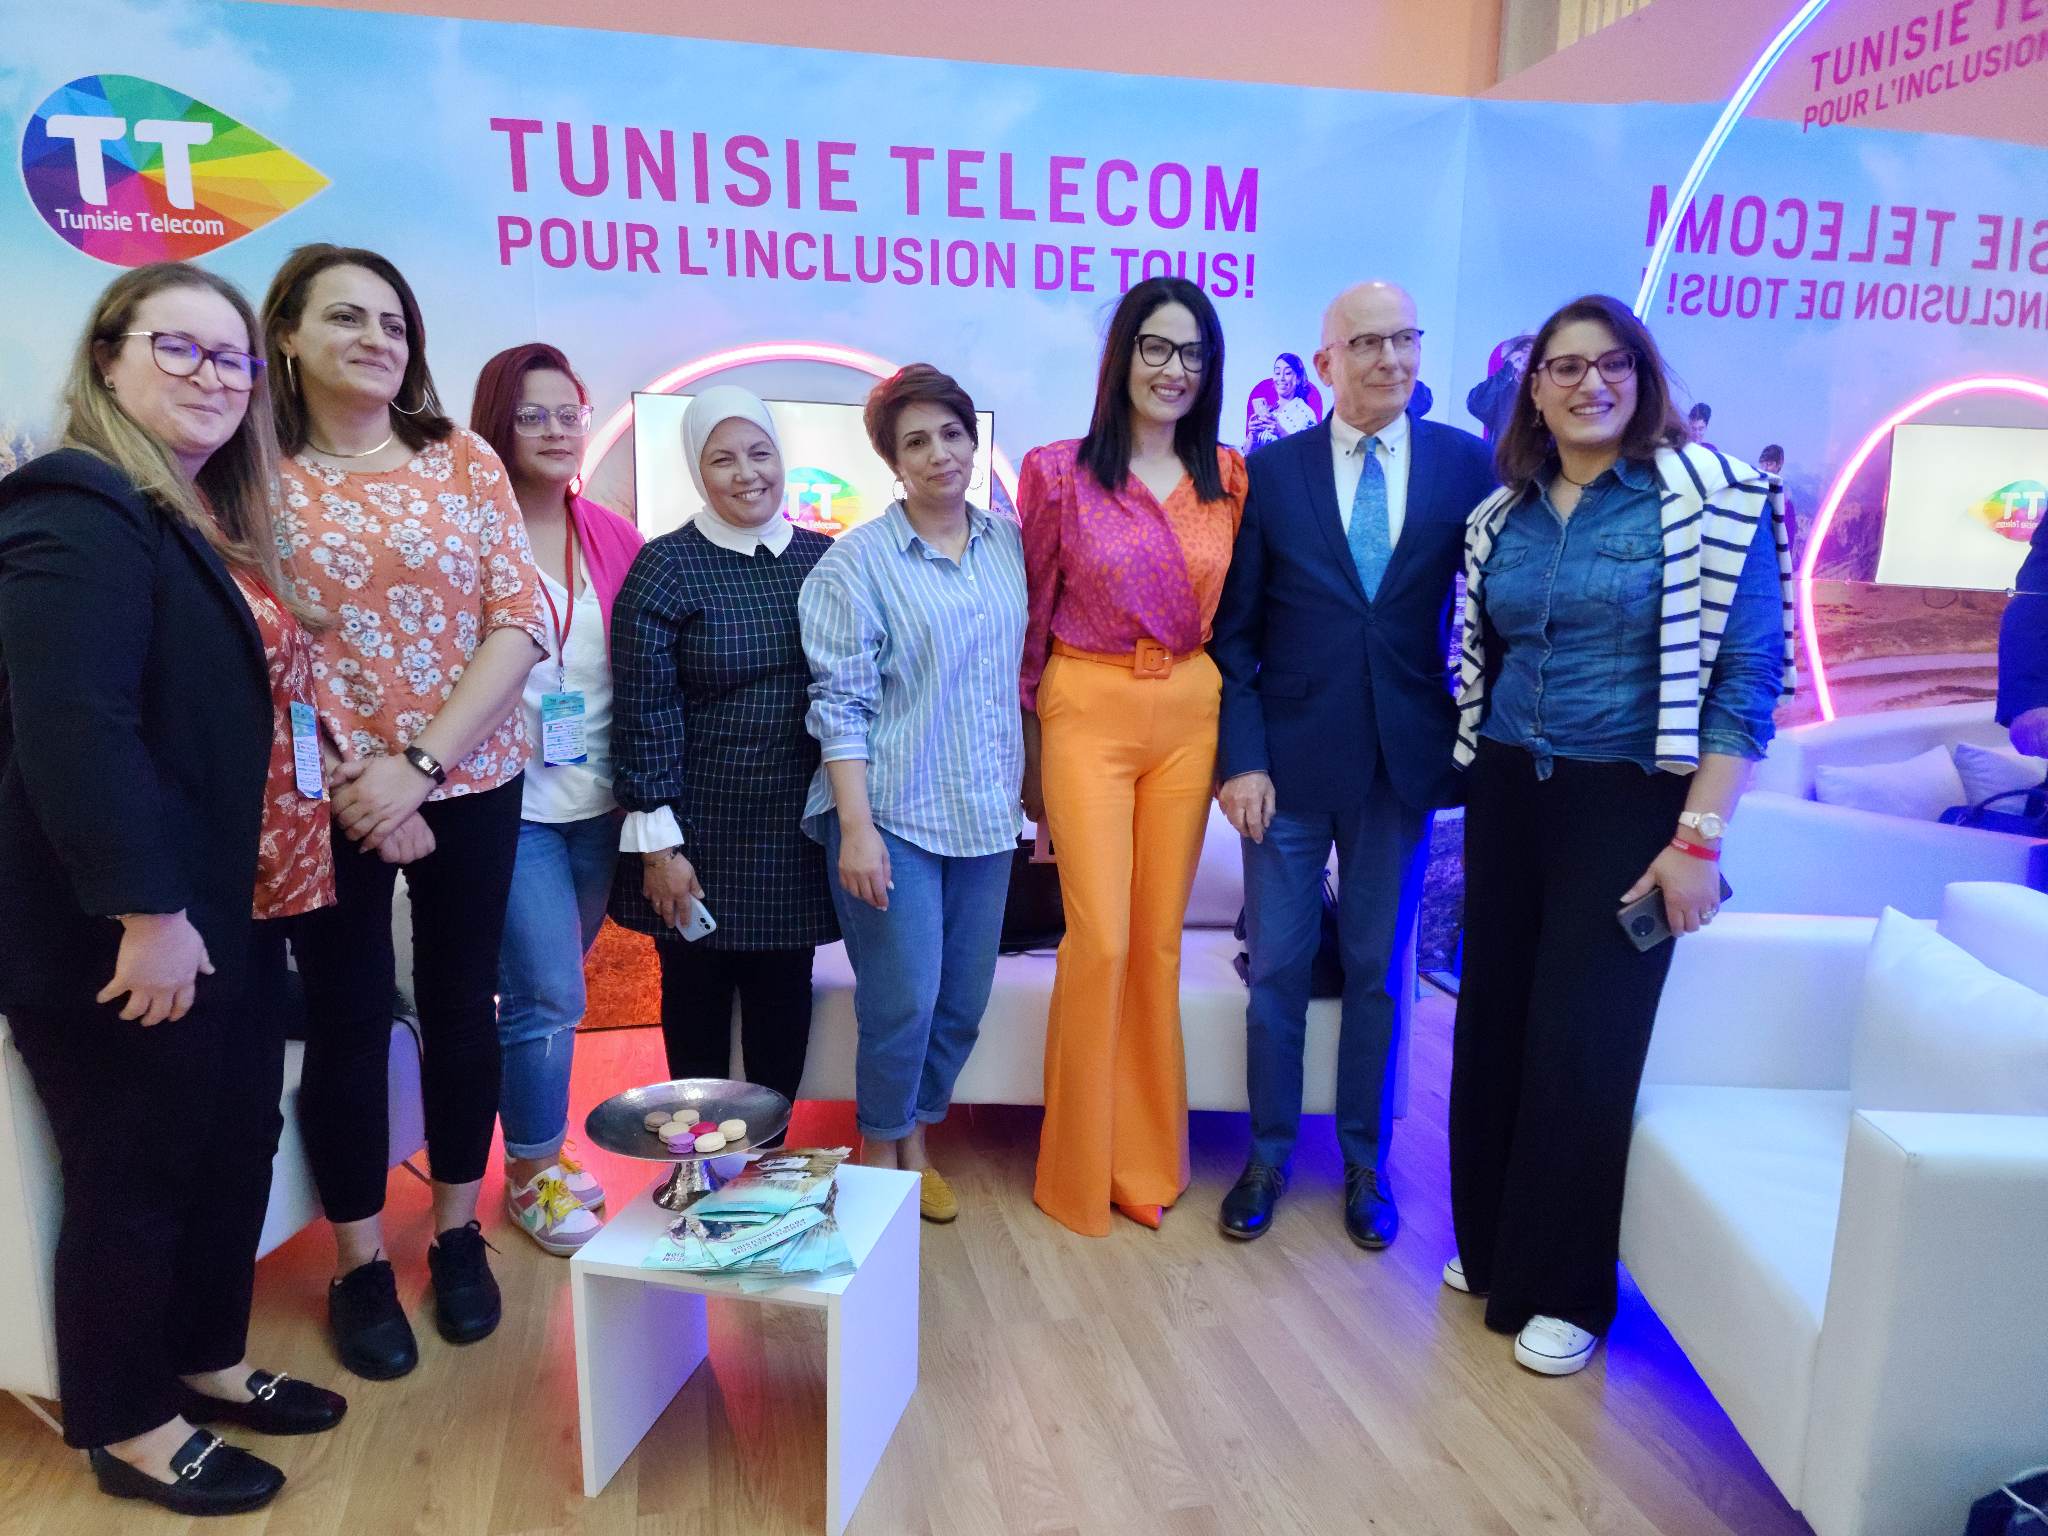    تتويج جديد لاتصالات تونس .. برنامج "اشملني" يحصد جائزة " الابتكار من أجل الشمول الاجتماعي" 